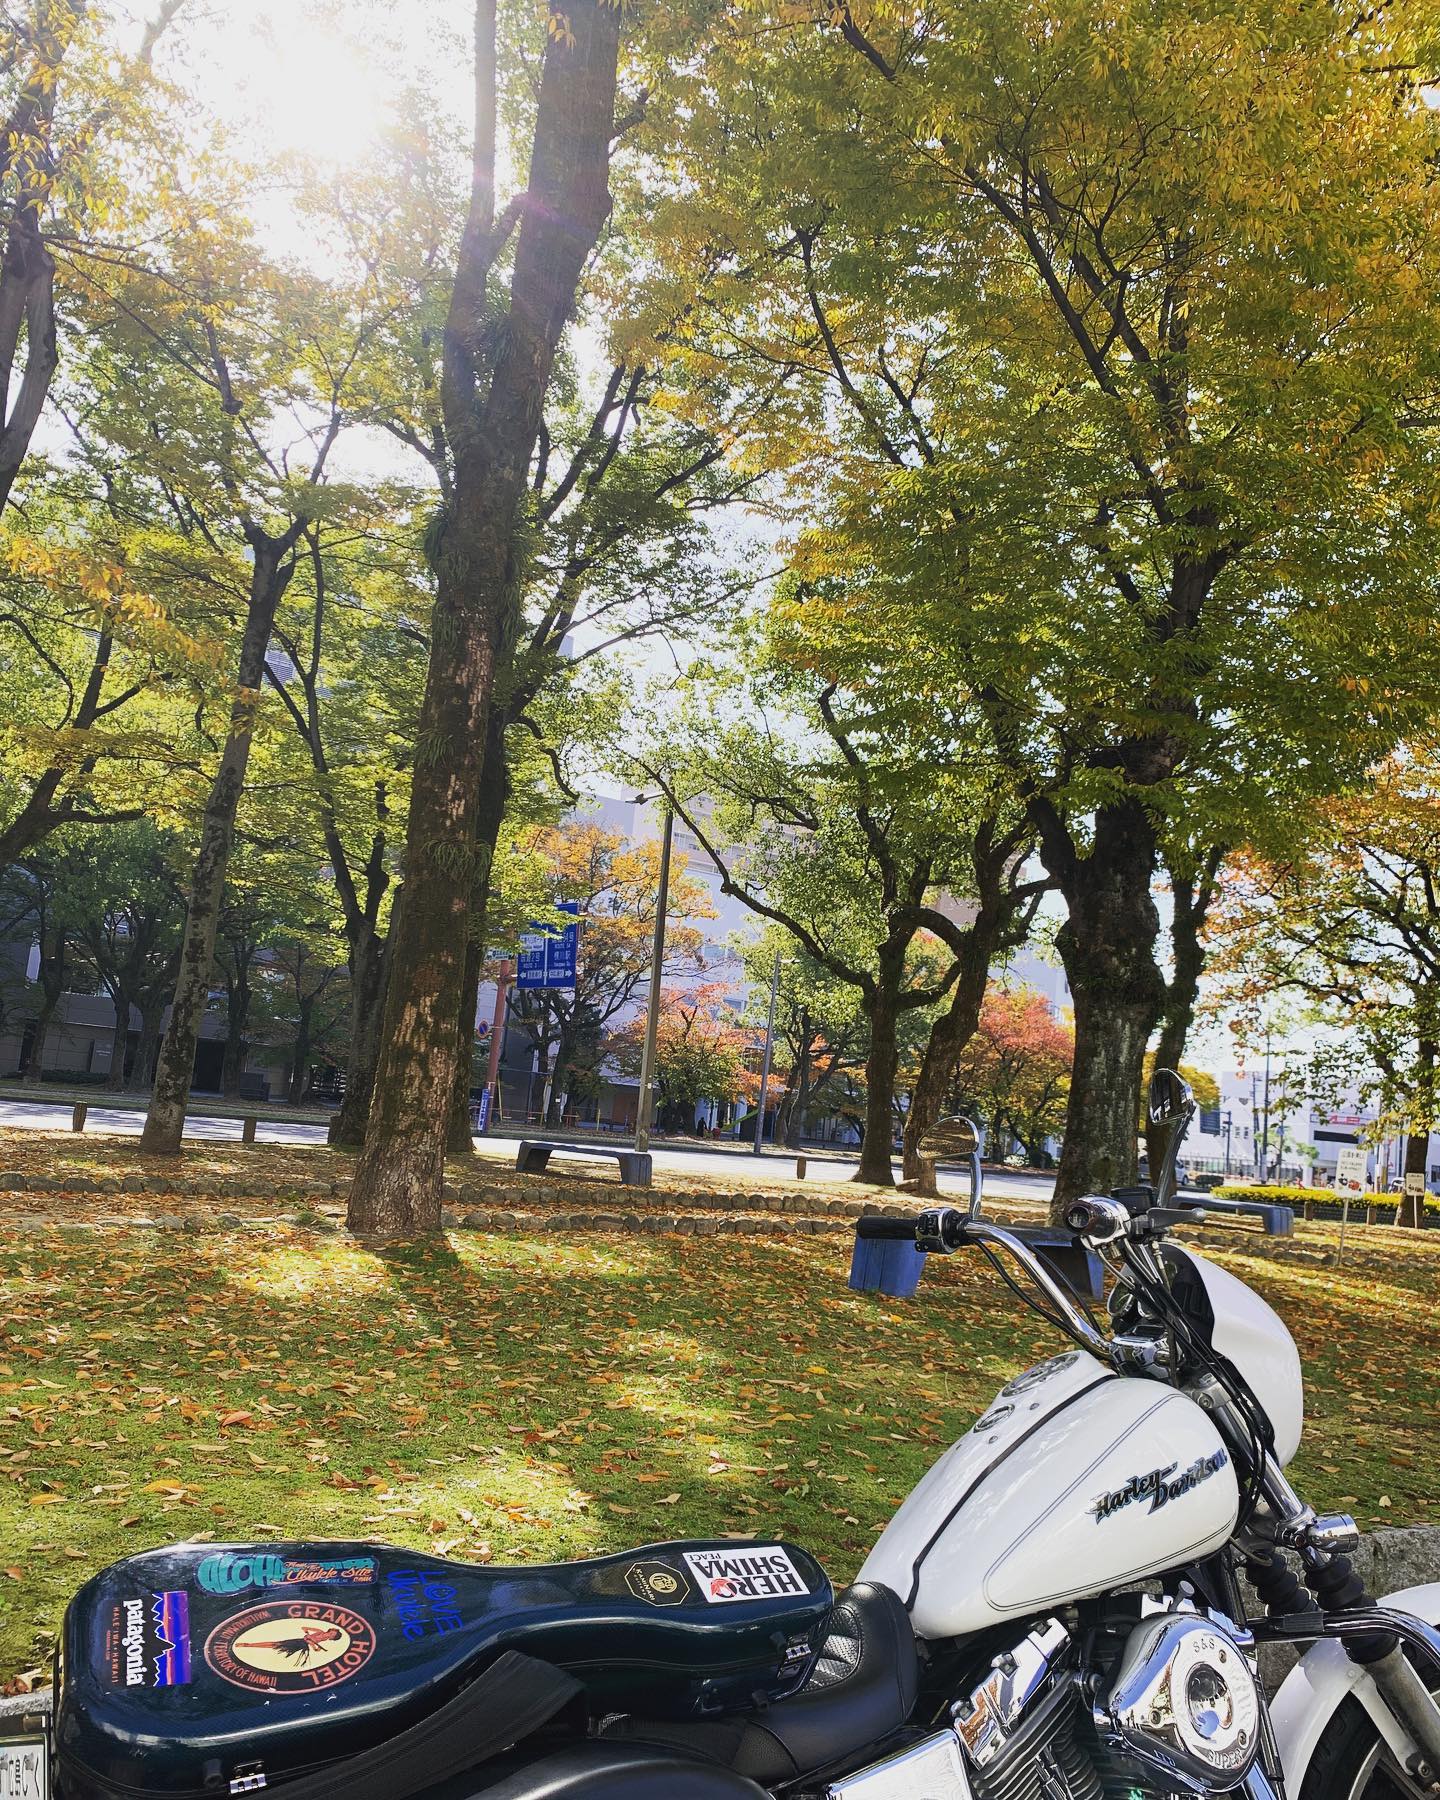 今日の天気はバイク日和じゃ。ツーリング気分でレッスン場所へ〜。#ウクレレレッスン#バイク日和